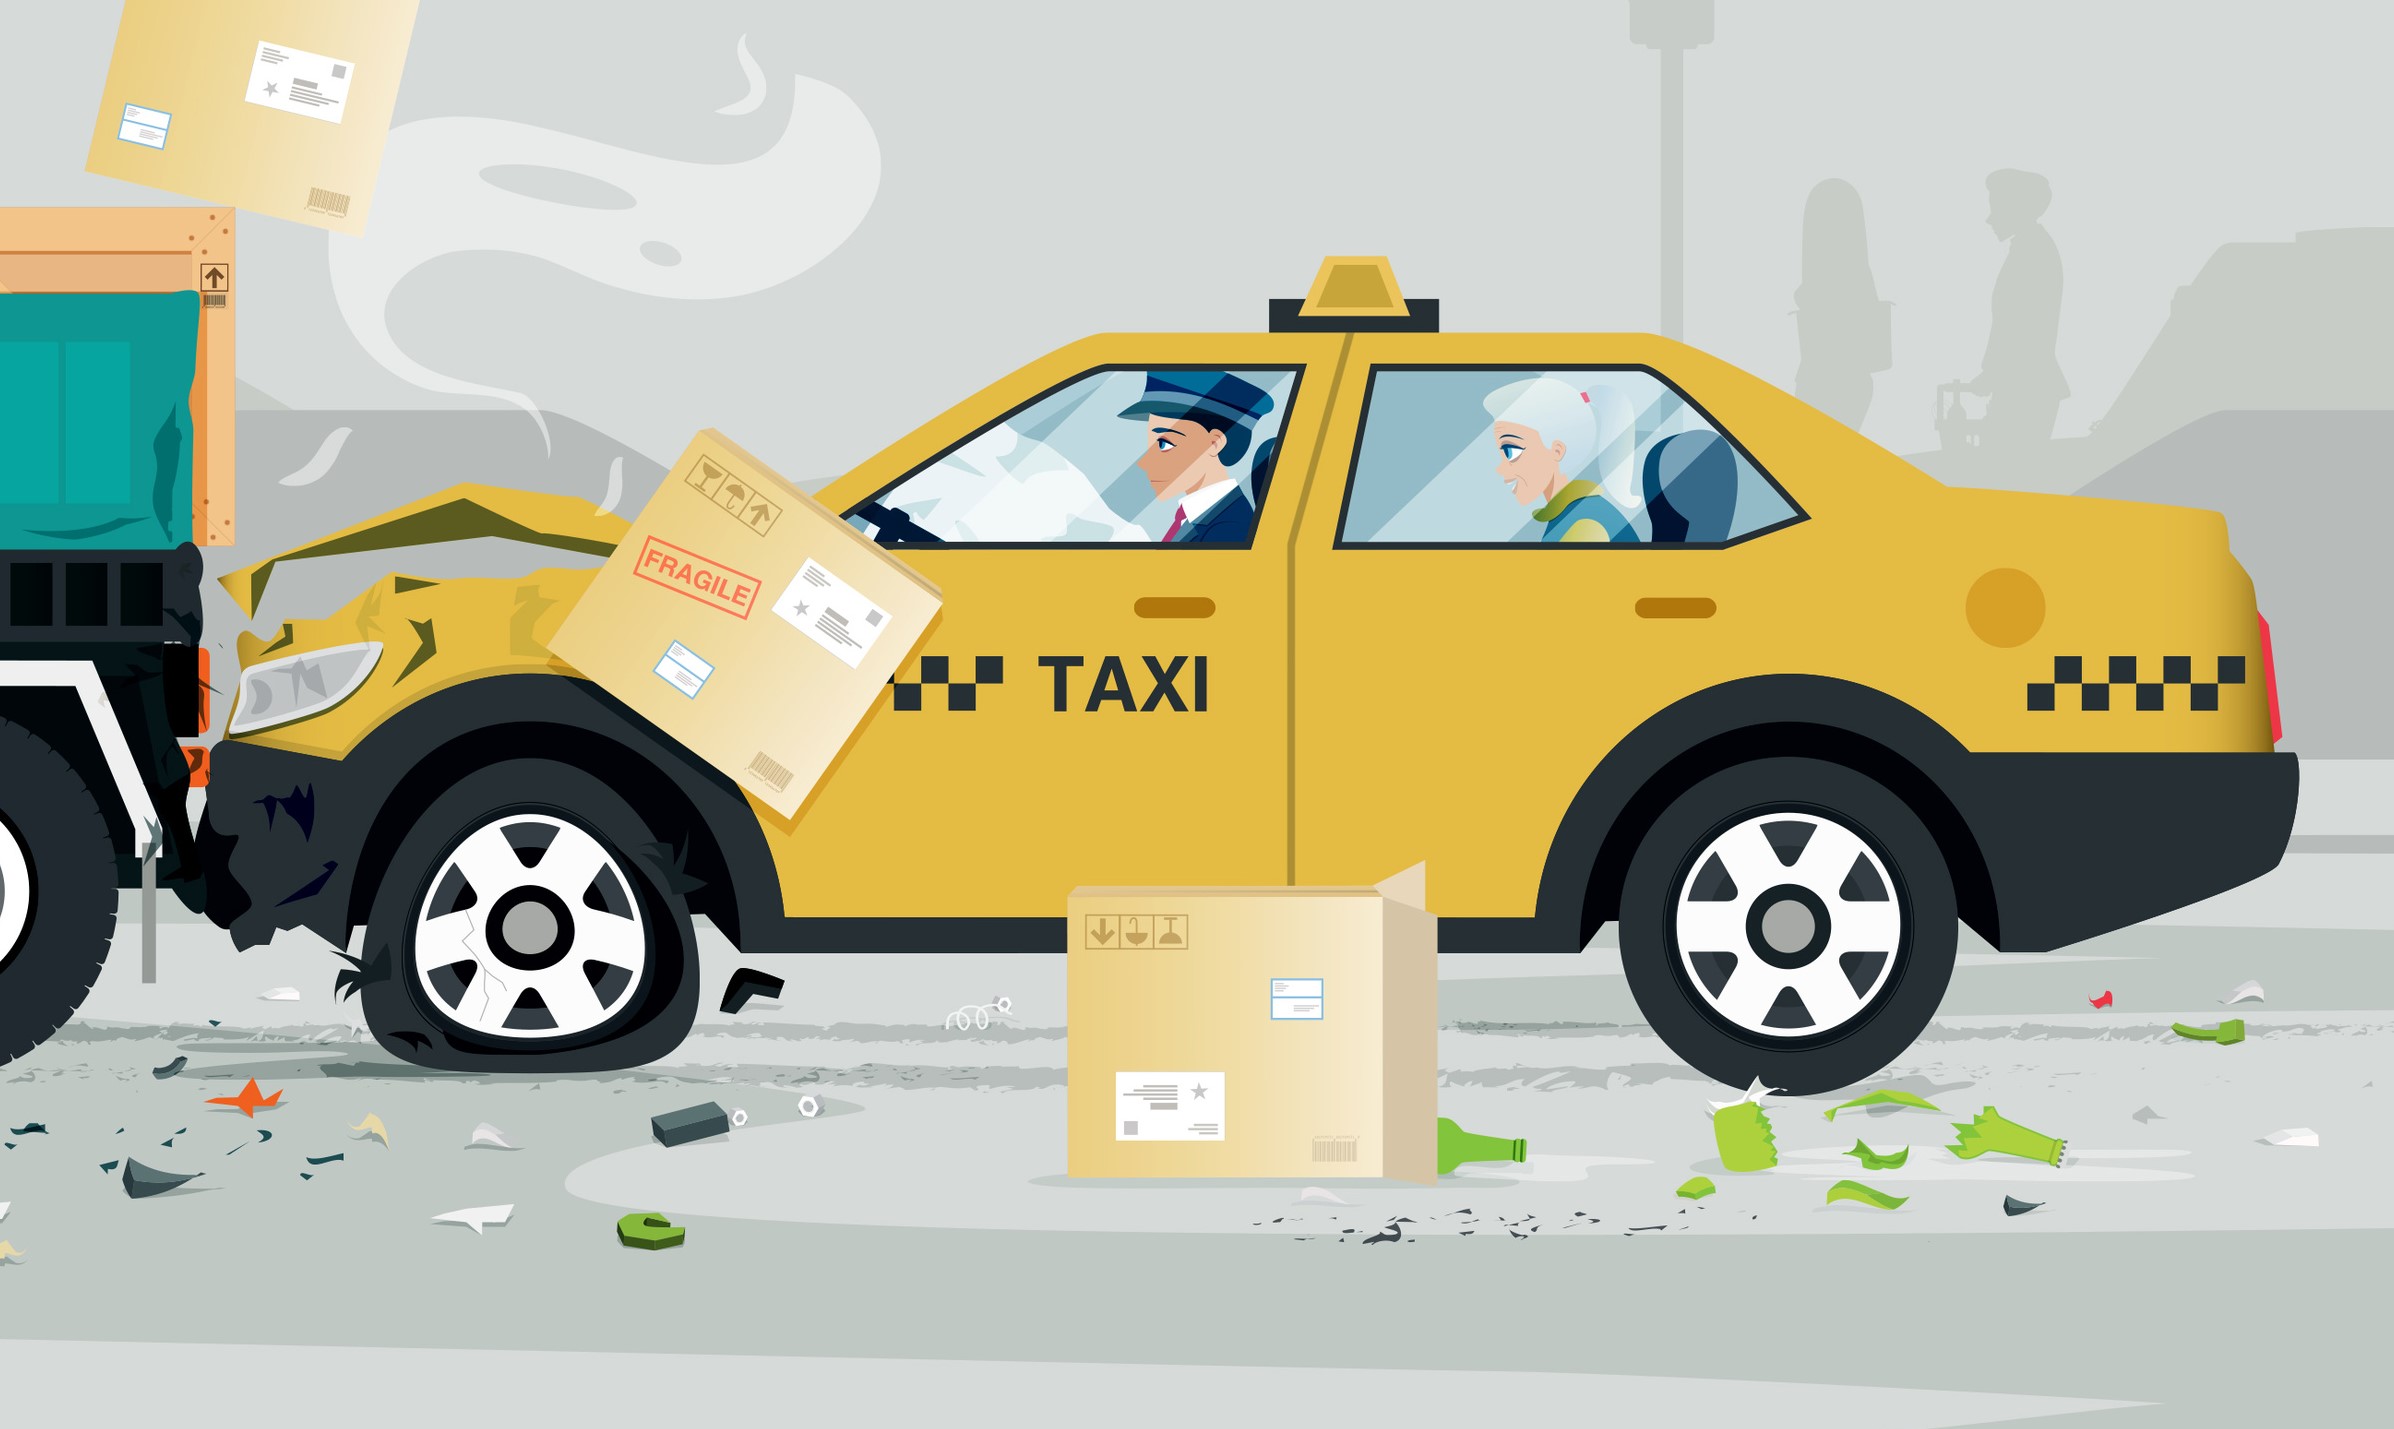 Cab Aggregators & Taxi Services